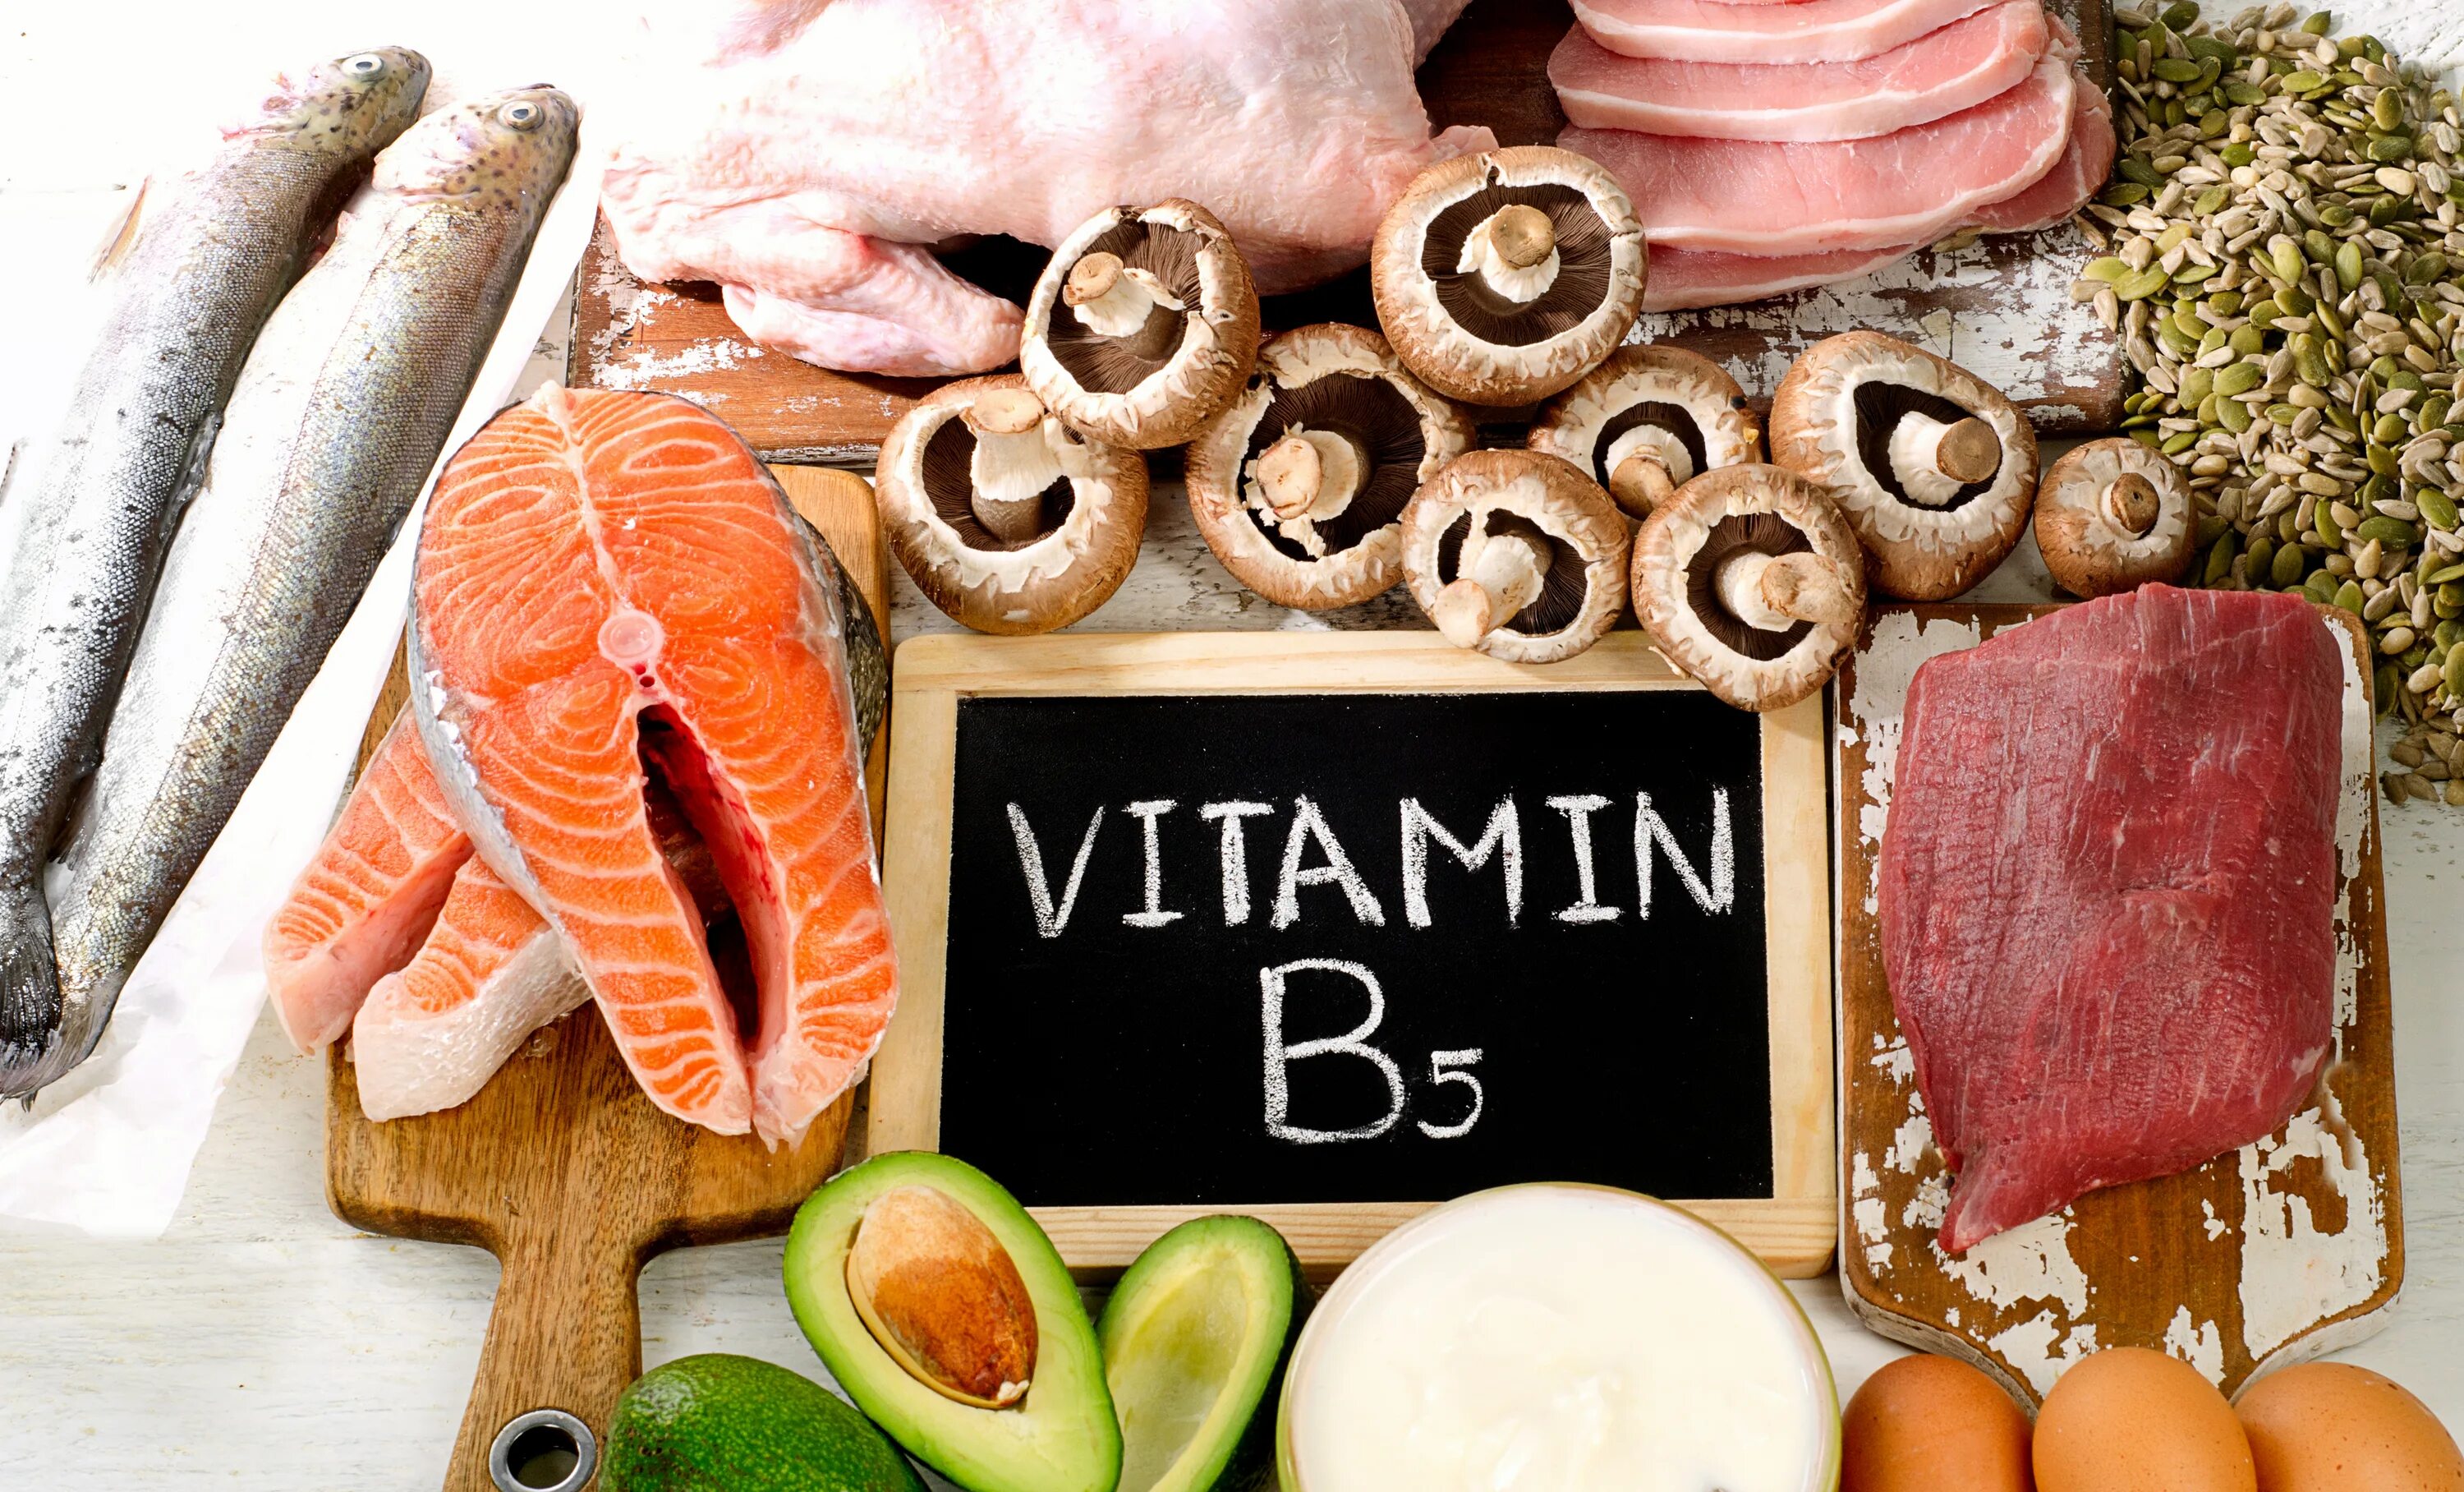 Витамин b5 пантотеновая кислота. Витамины группы b5. Пантотеновая кислота (витамин b5) в продуктах. Источники витамина в5.